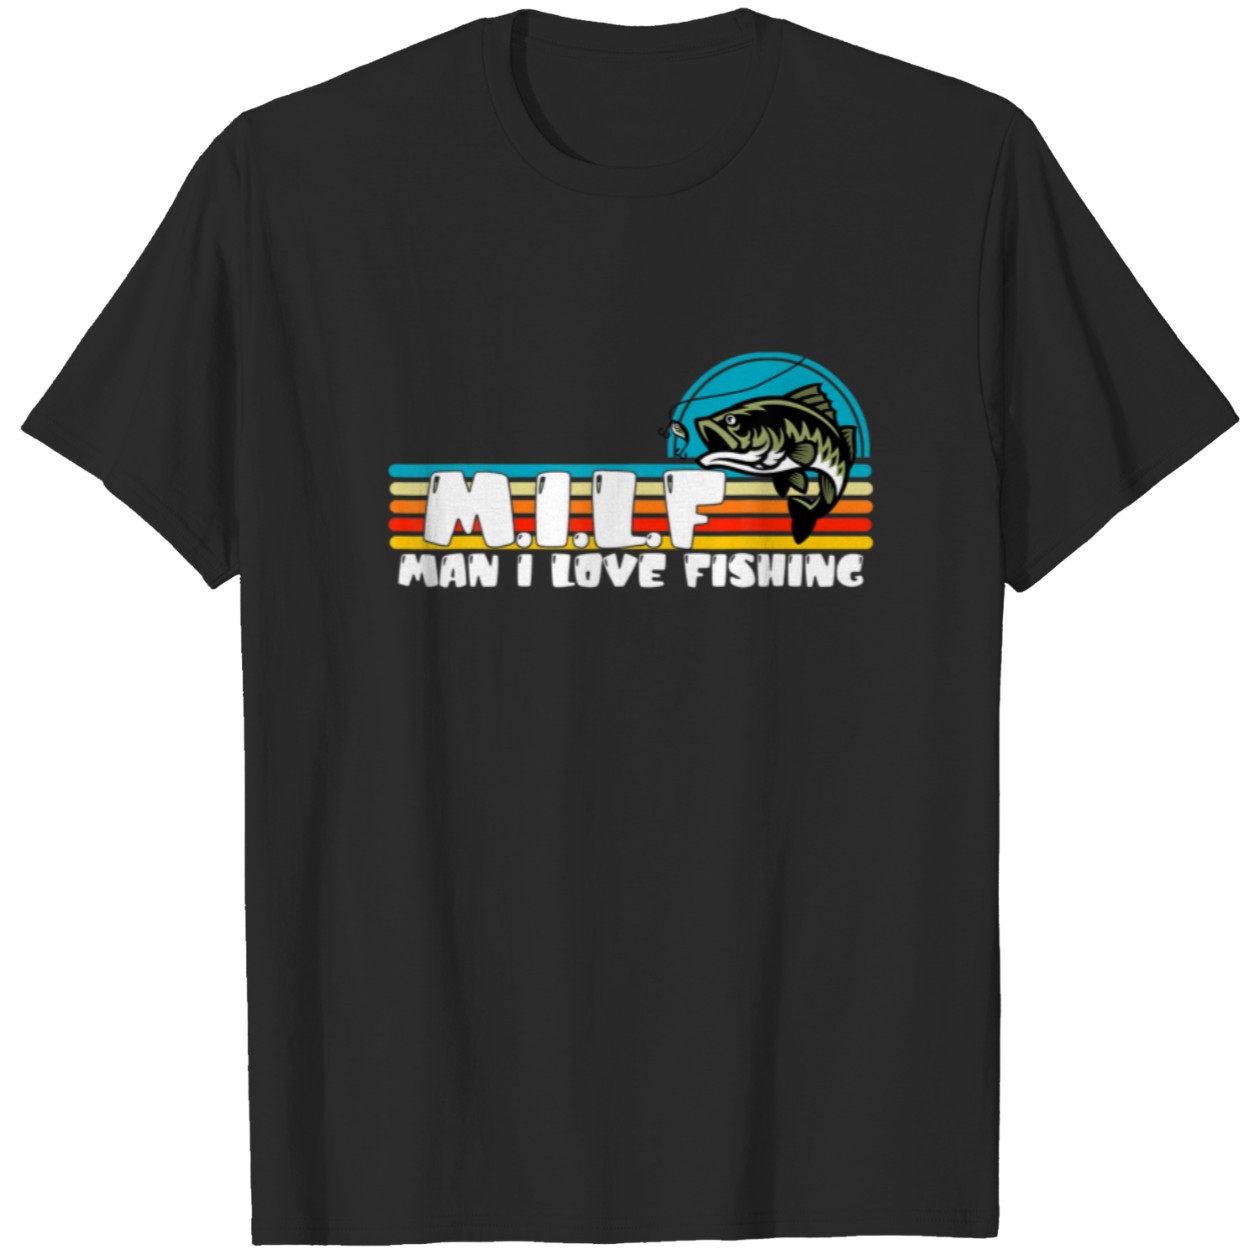 Milf Man I Love Fishing Funny Fishing Tshirt 86382773